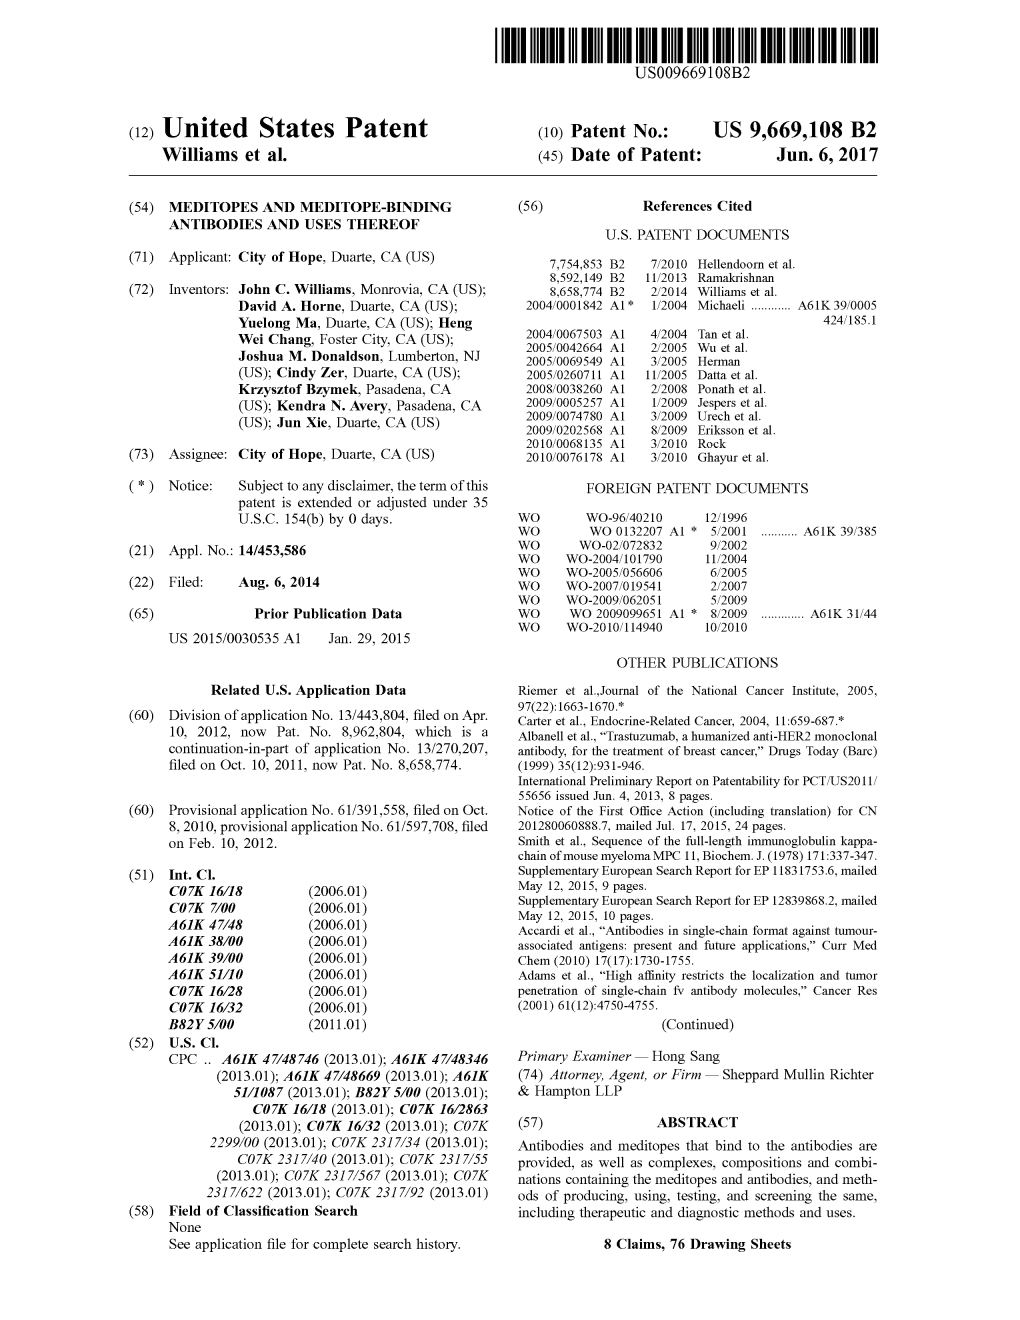 (12) United States Patent (10) Patent No.: US 9,669,108 B2 Williams Et Al